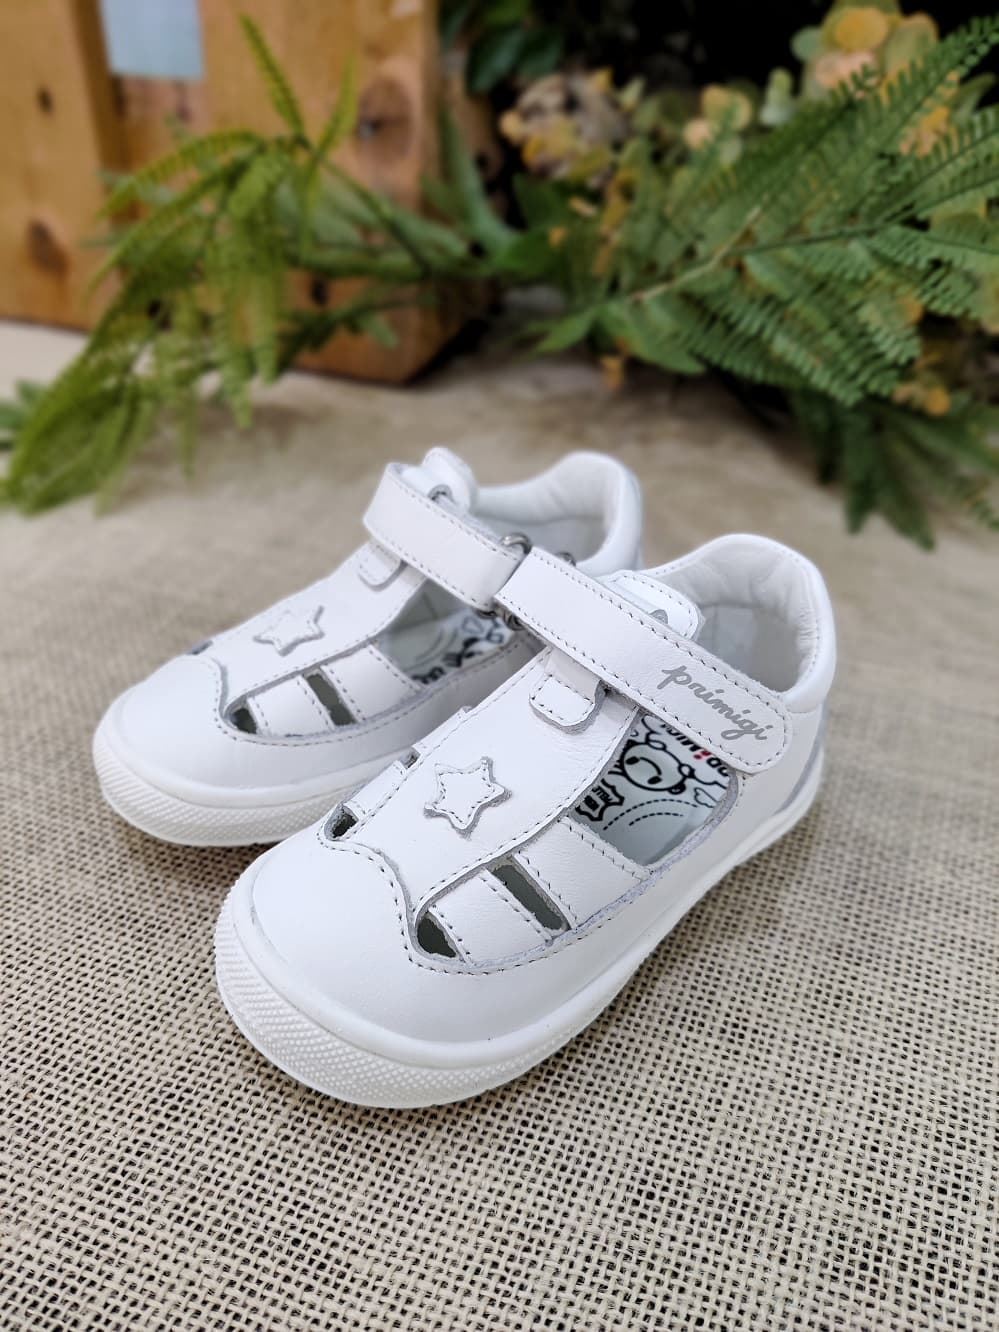 Primigi Soft Sandals in White first steps - Image 4